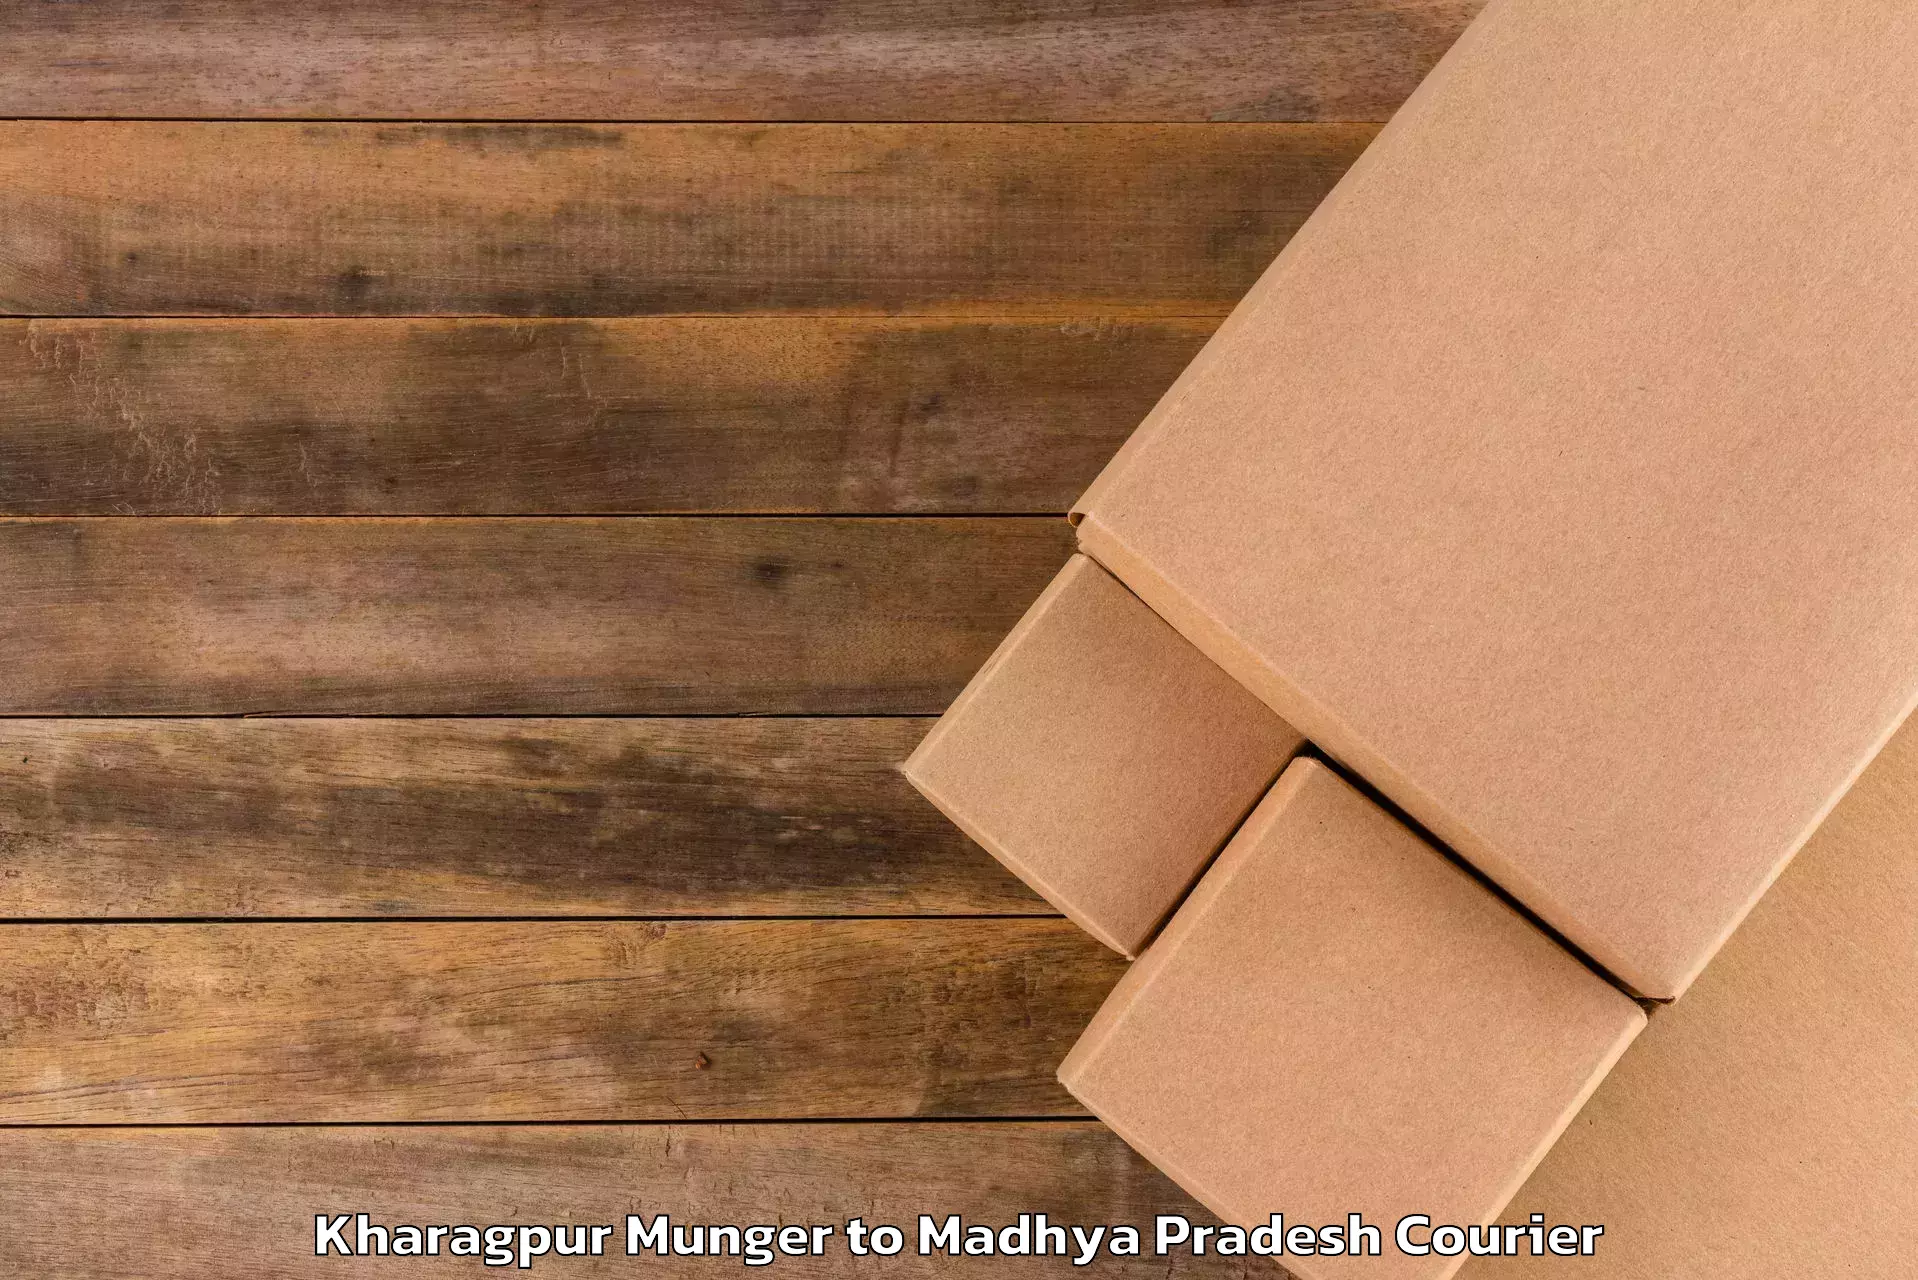 Luggage shipping planner Kharagpur Munger to Banda Sagar